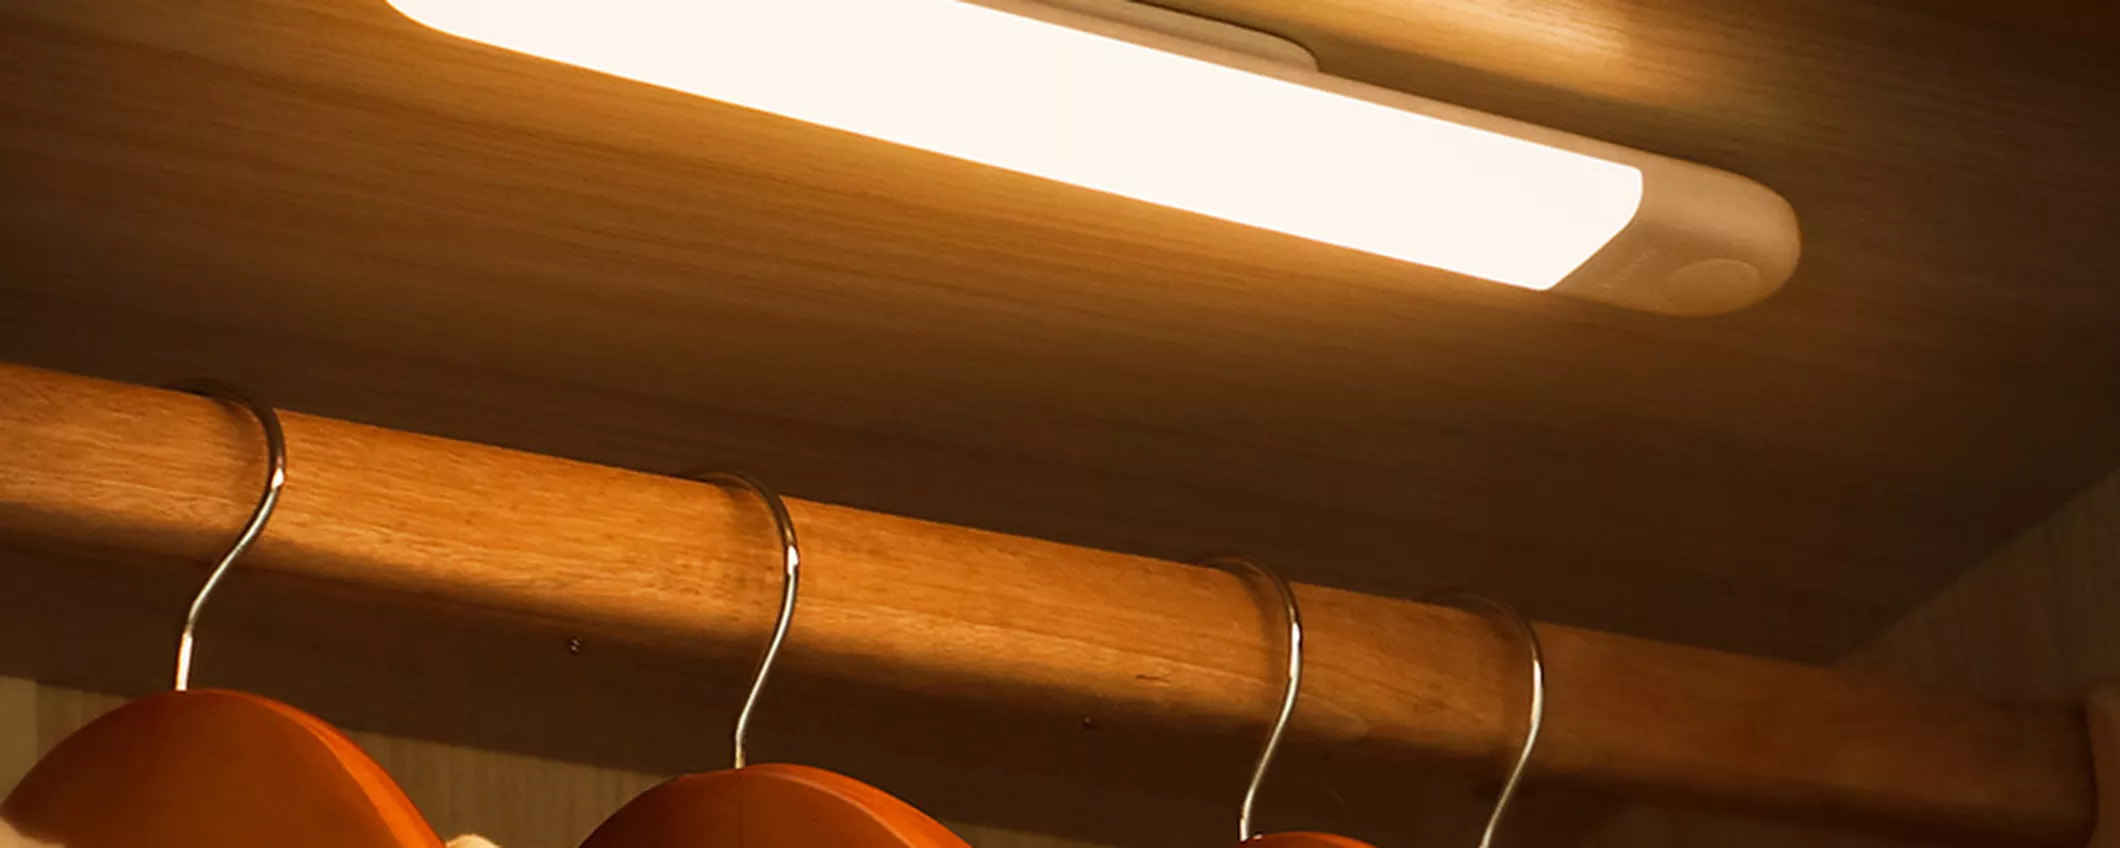 Luci armadio LED con sensore di movimento: le installi dove vuoi e si accendono quando servono